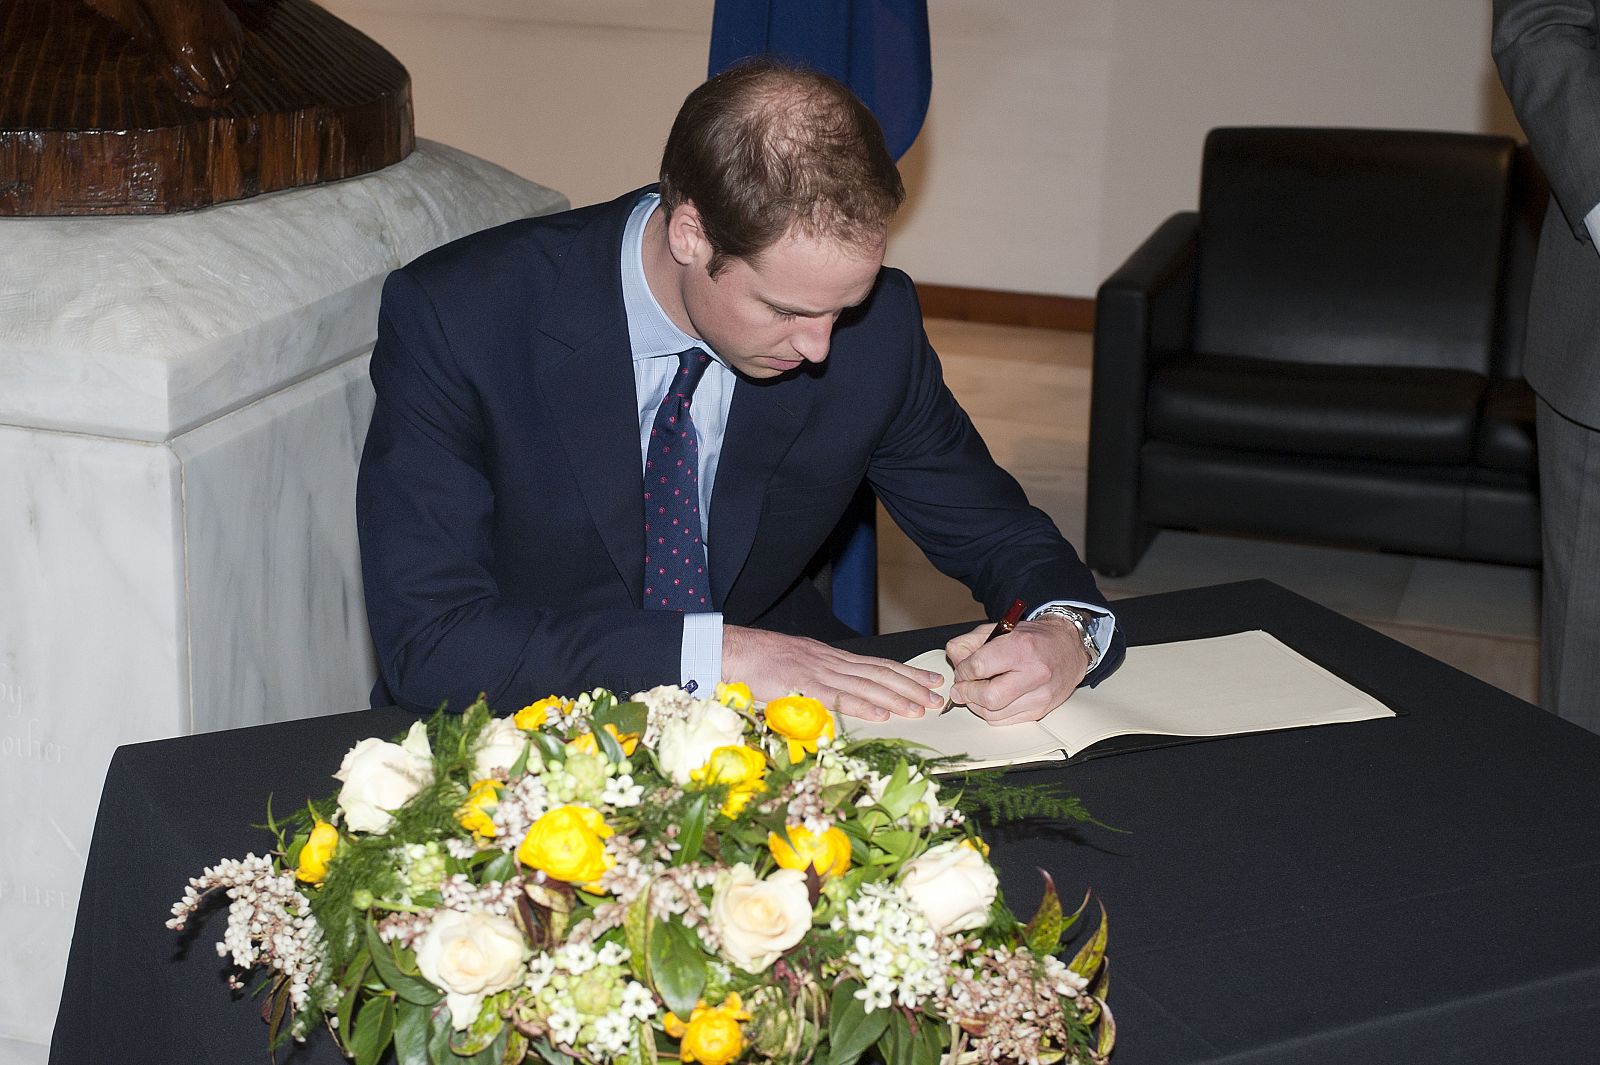 El príncipe William es el segundo heredero al trono en la línea sucesoria.